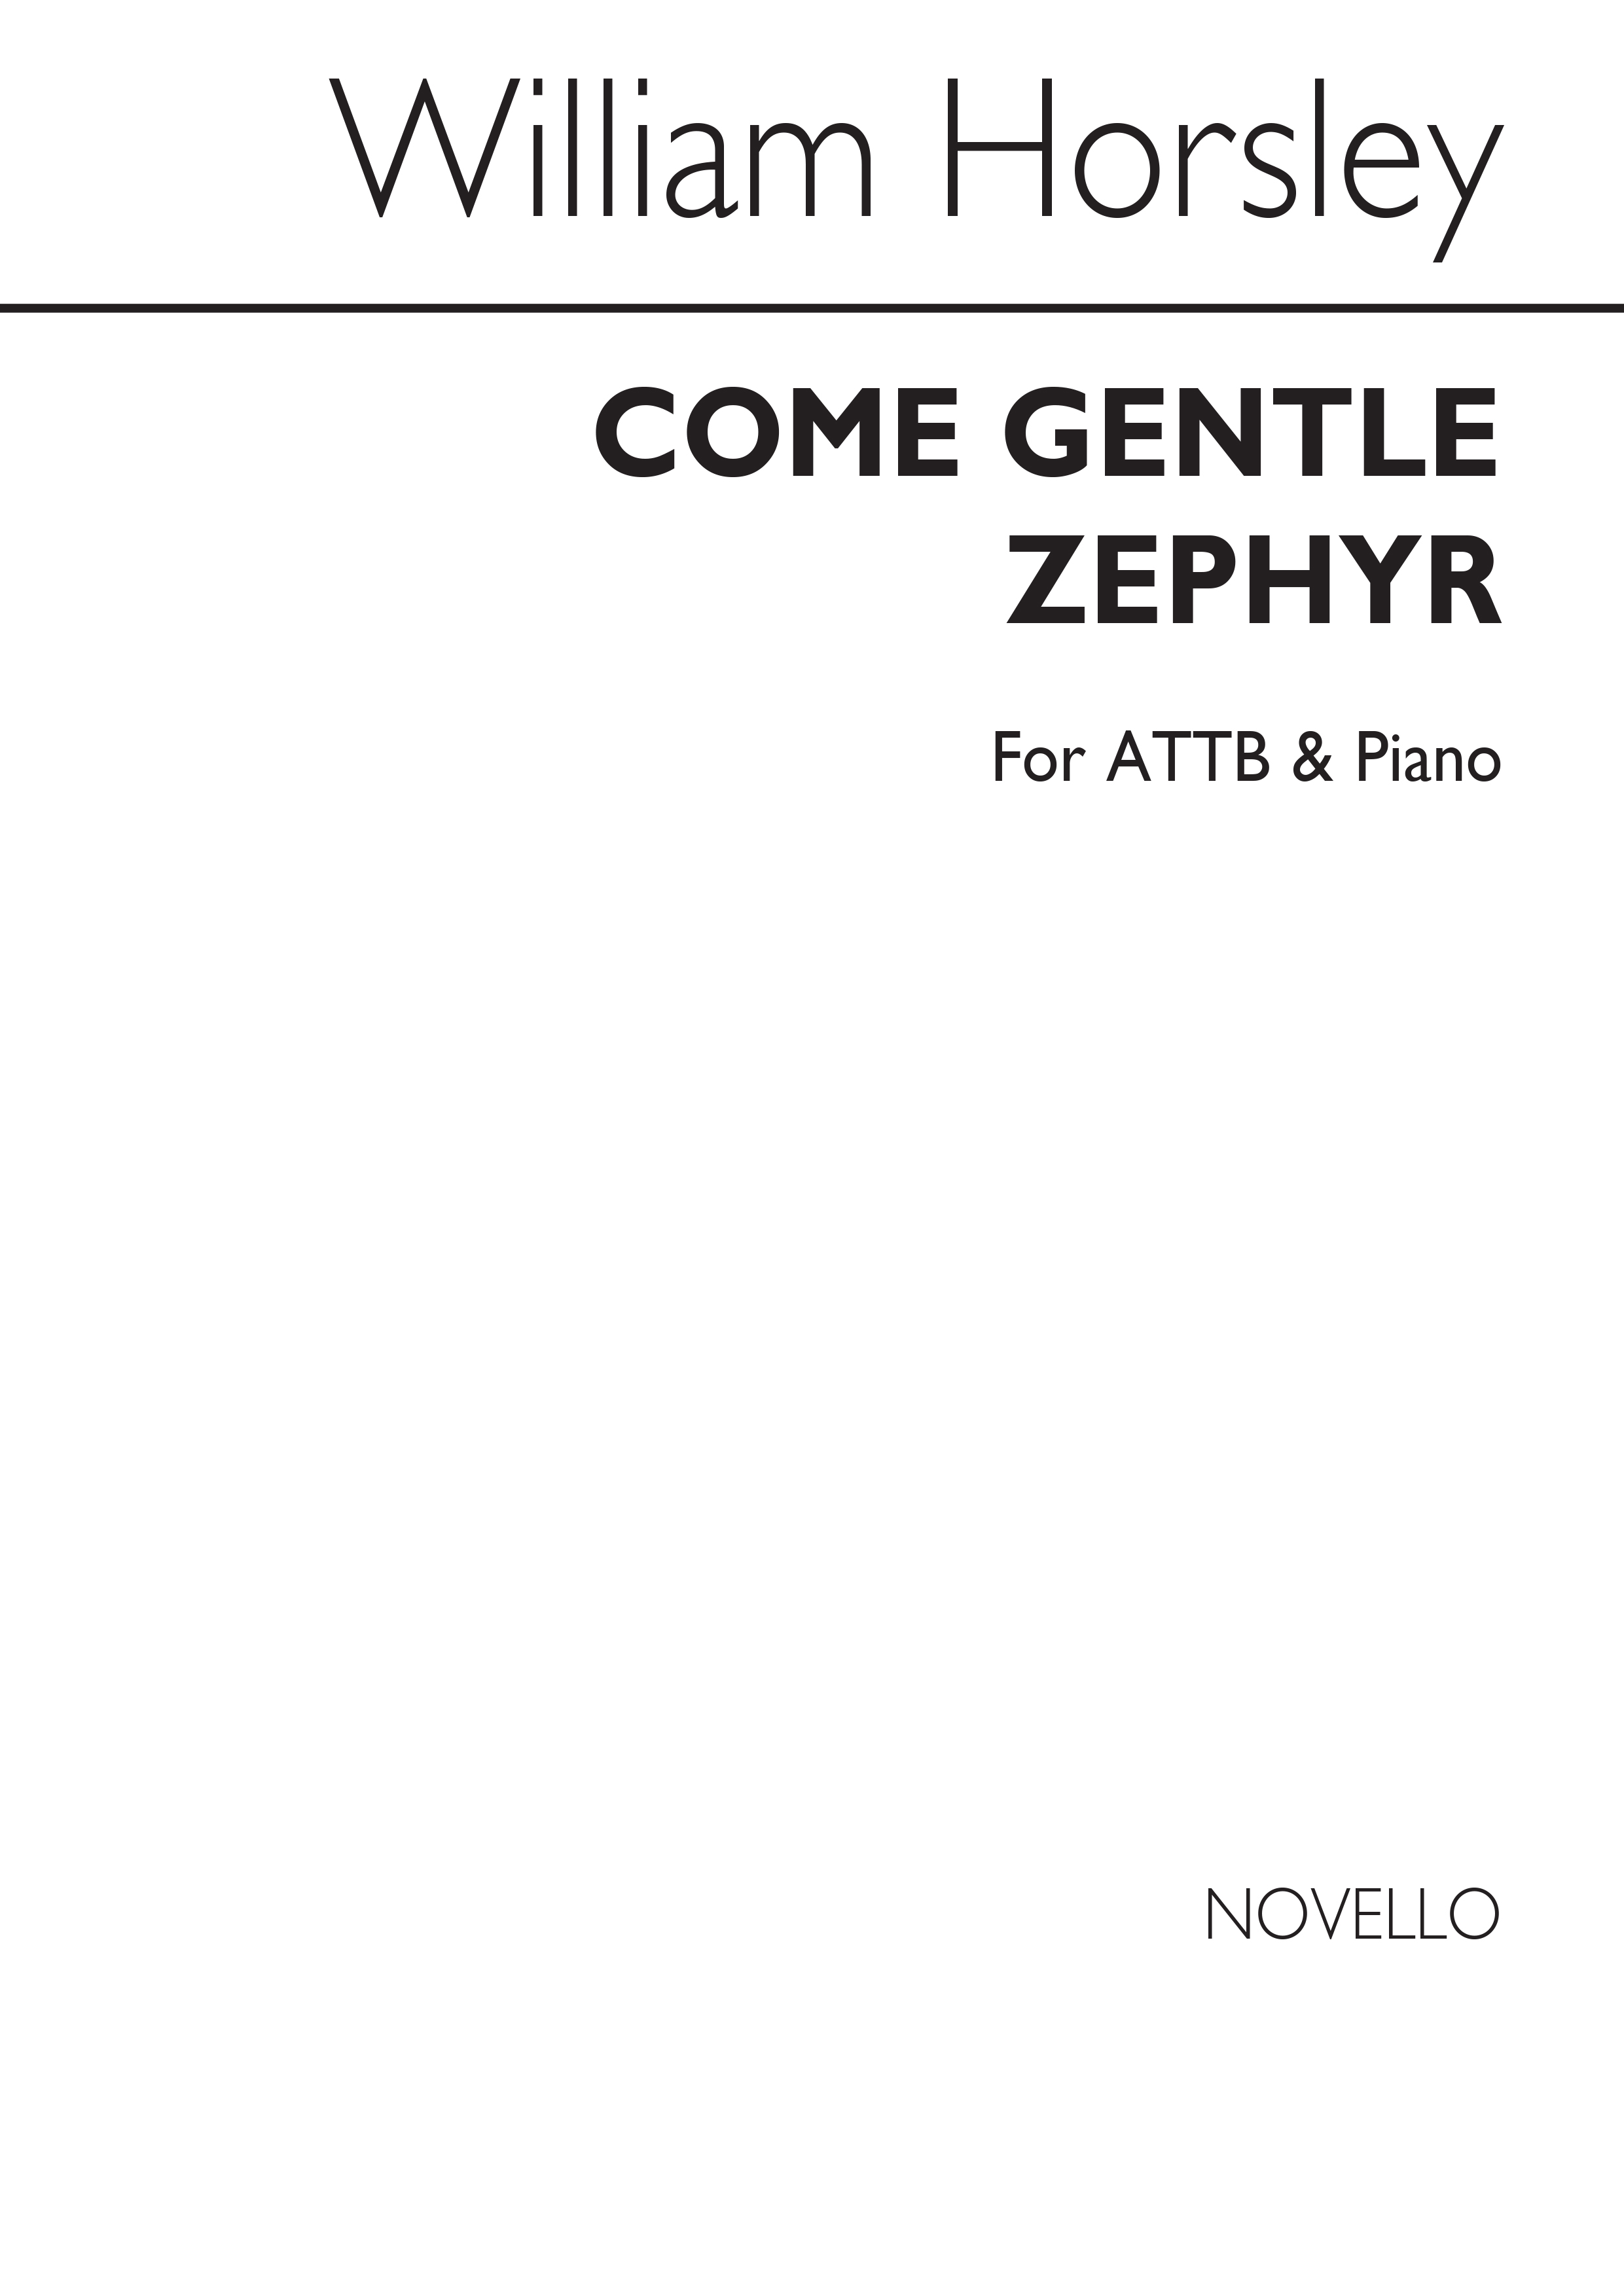 William Horsley: Come, Gentle Zephyr